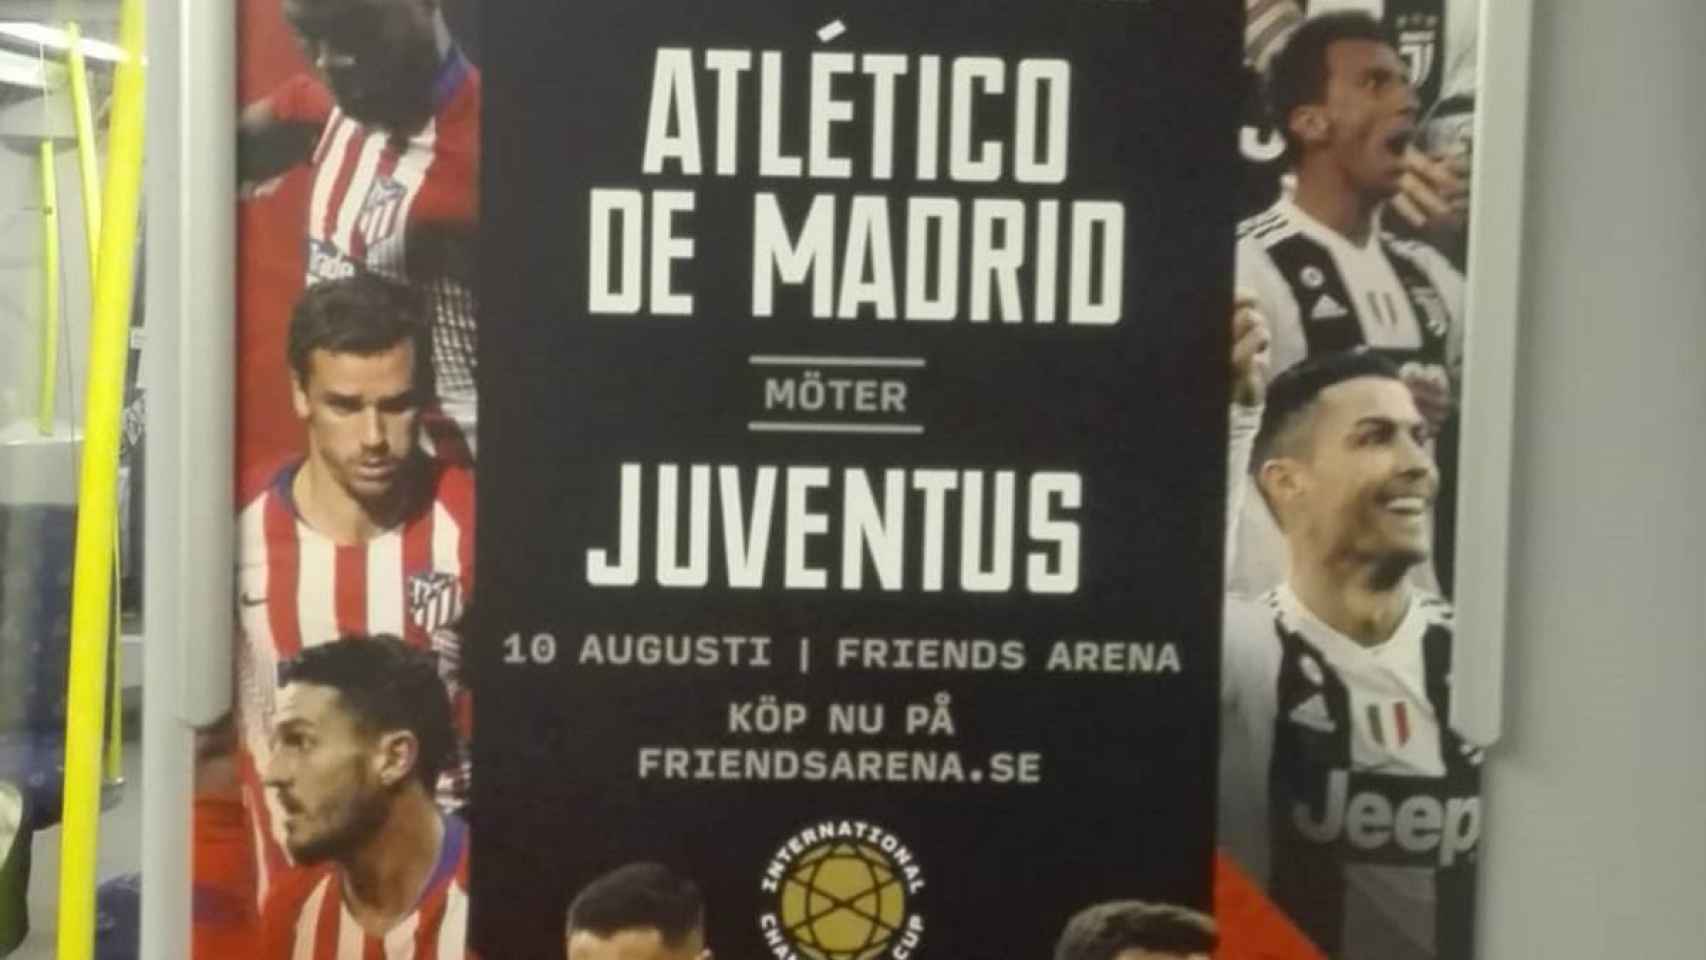 Cartel promocional del Atlético de Madrid  - Juventus en Estocolmo.